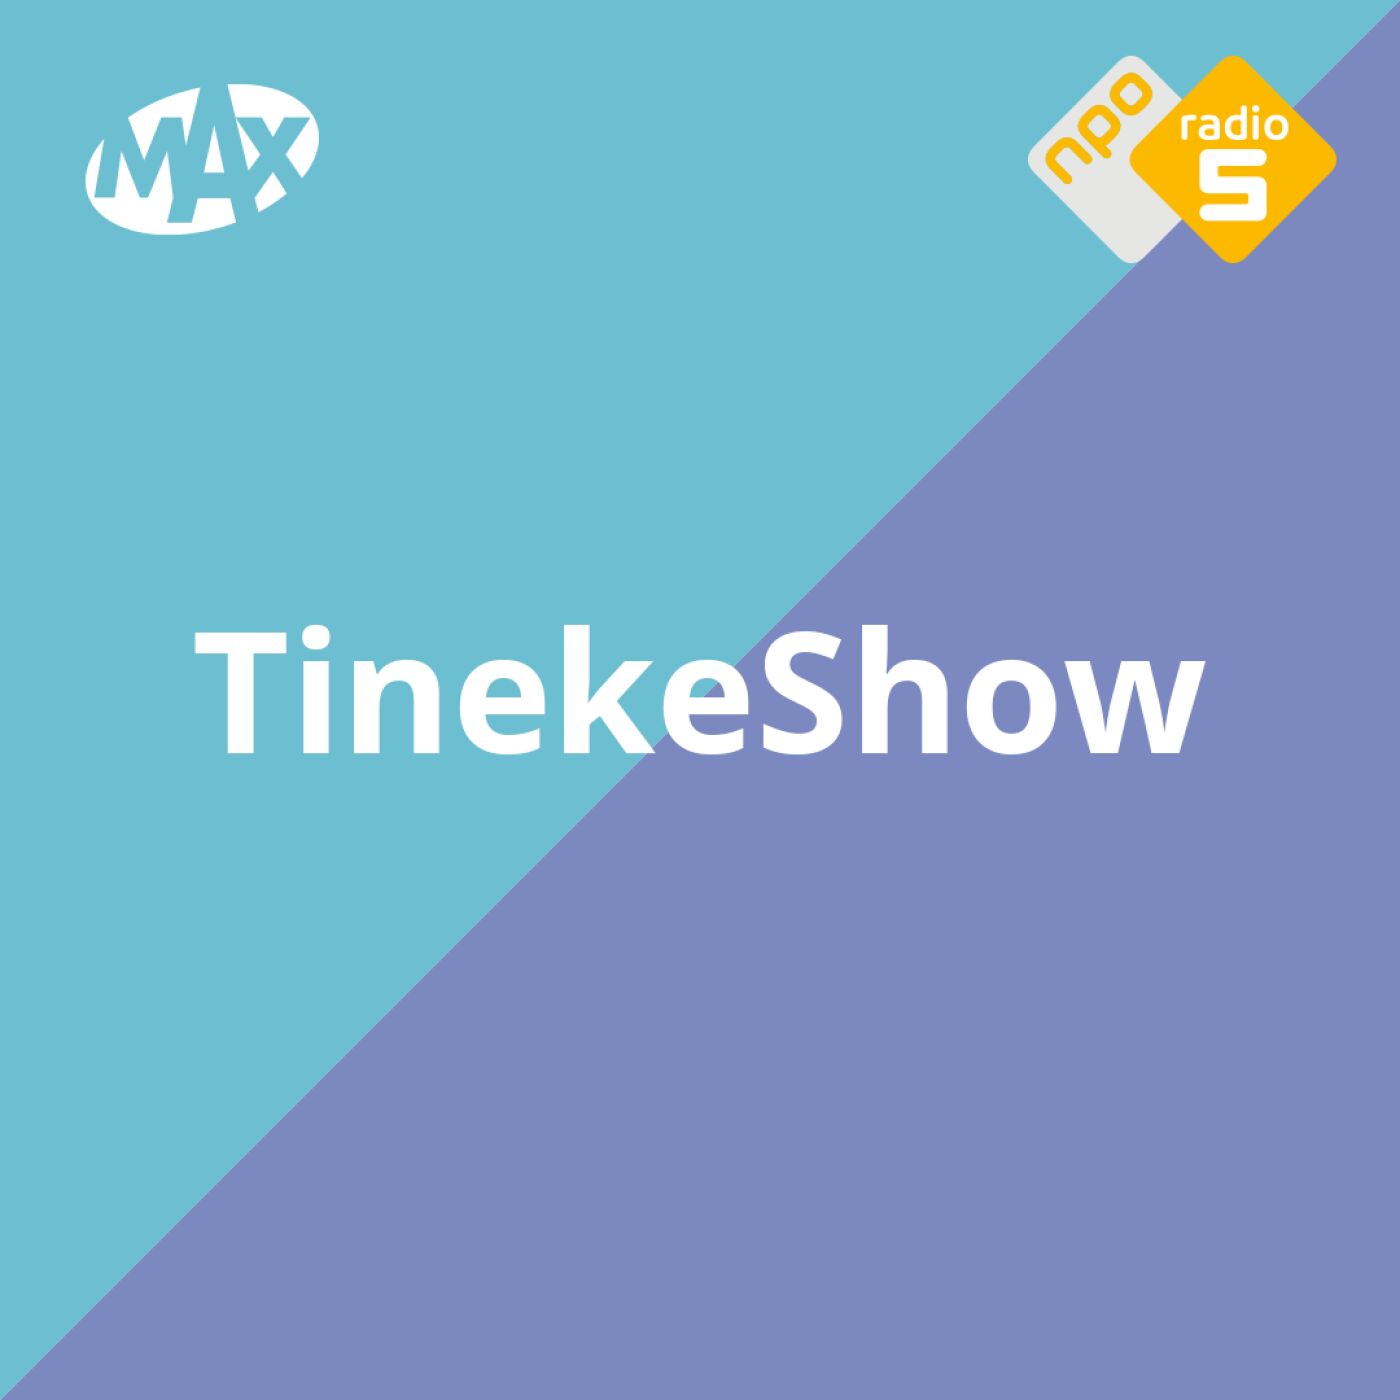 TinekeShow logo